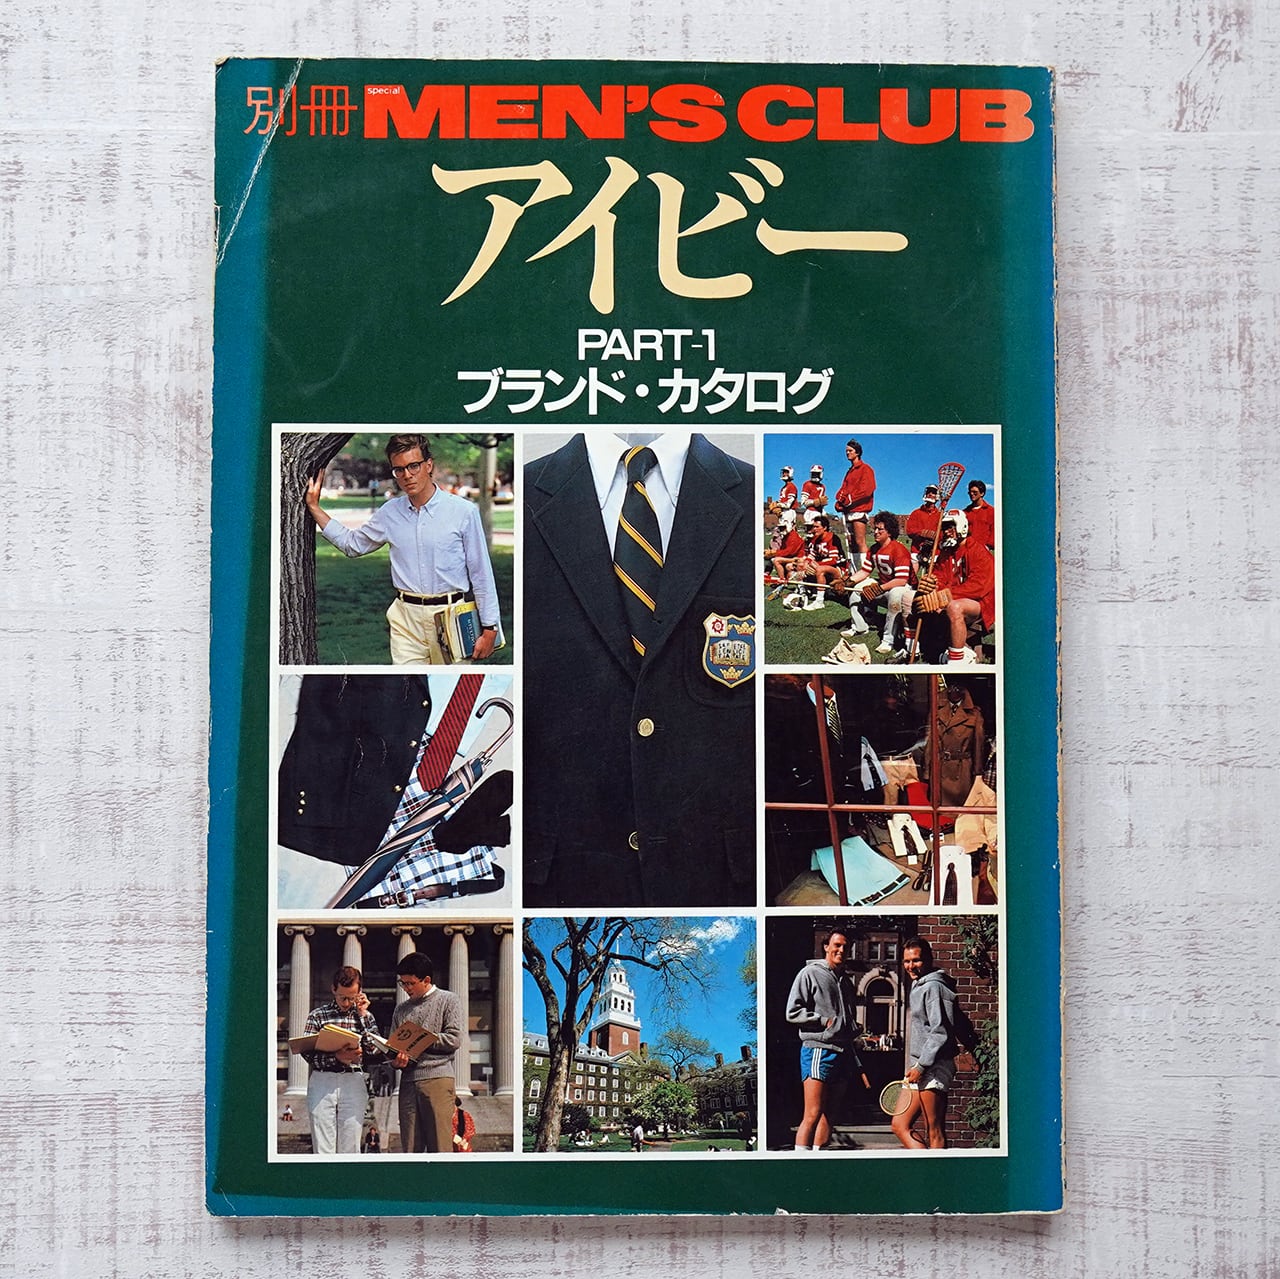 別冊 MEN'S CLUB アイビー PART-1 ブランド・カタログ | タイムカプセル